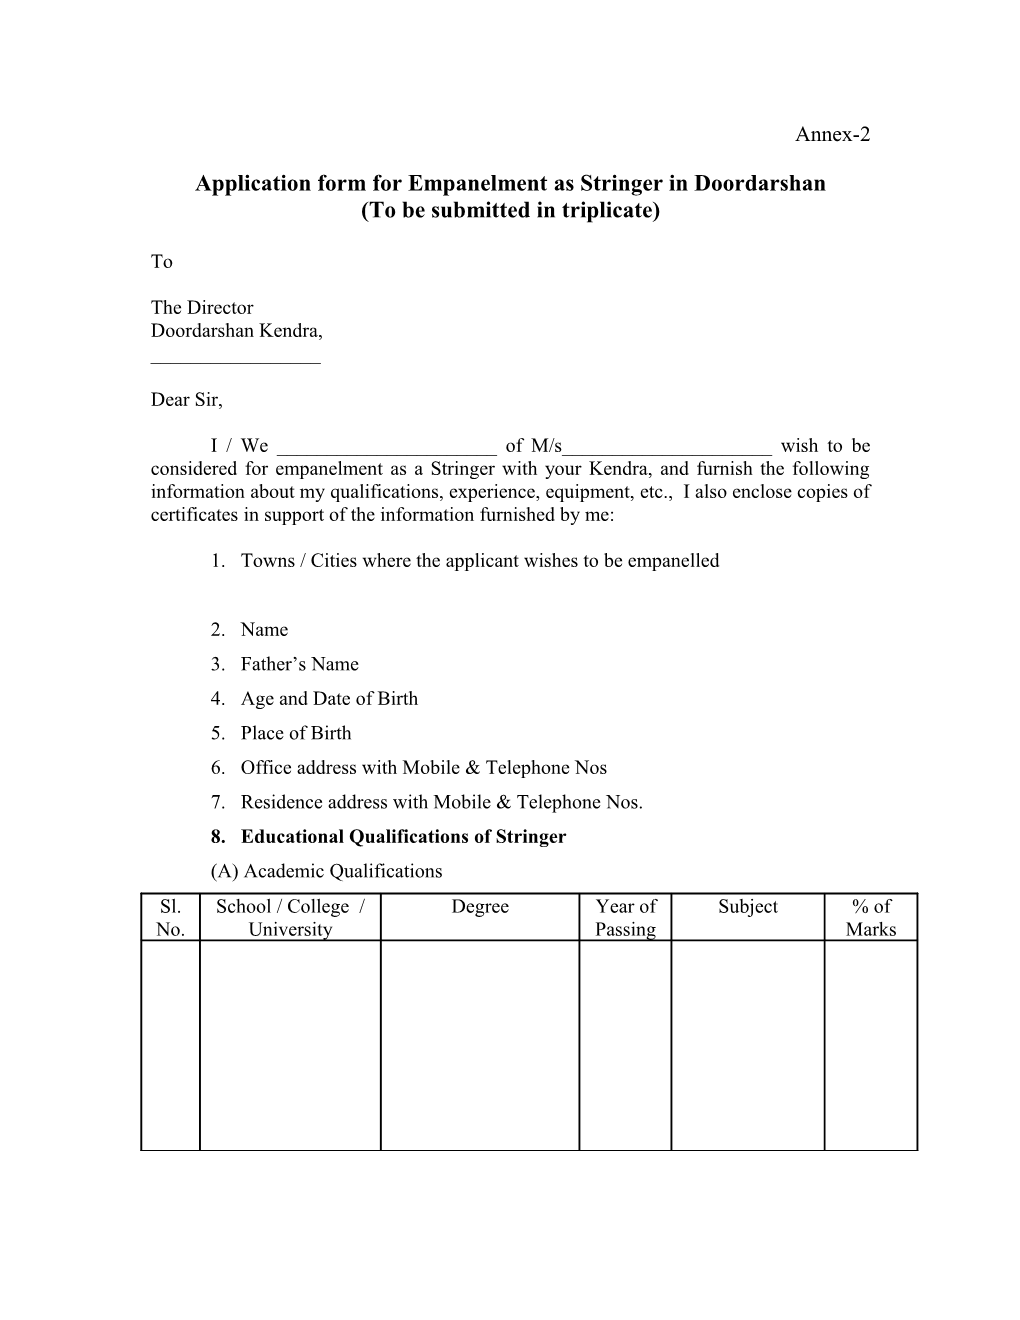 Application Form for Empanelment As Stringer in Doordarshan